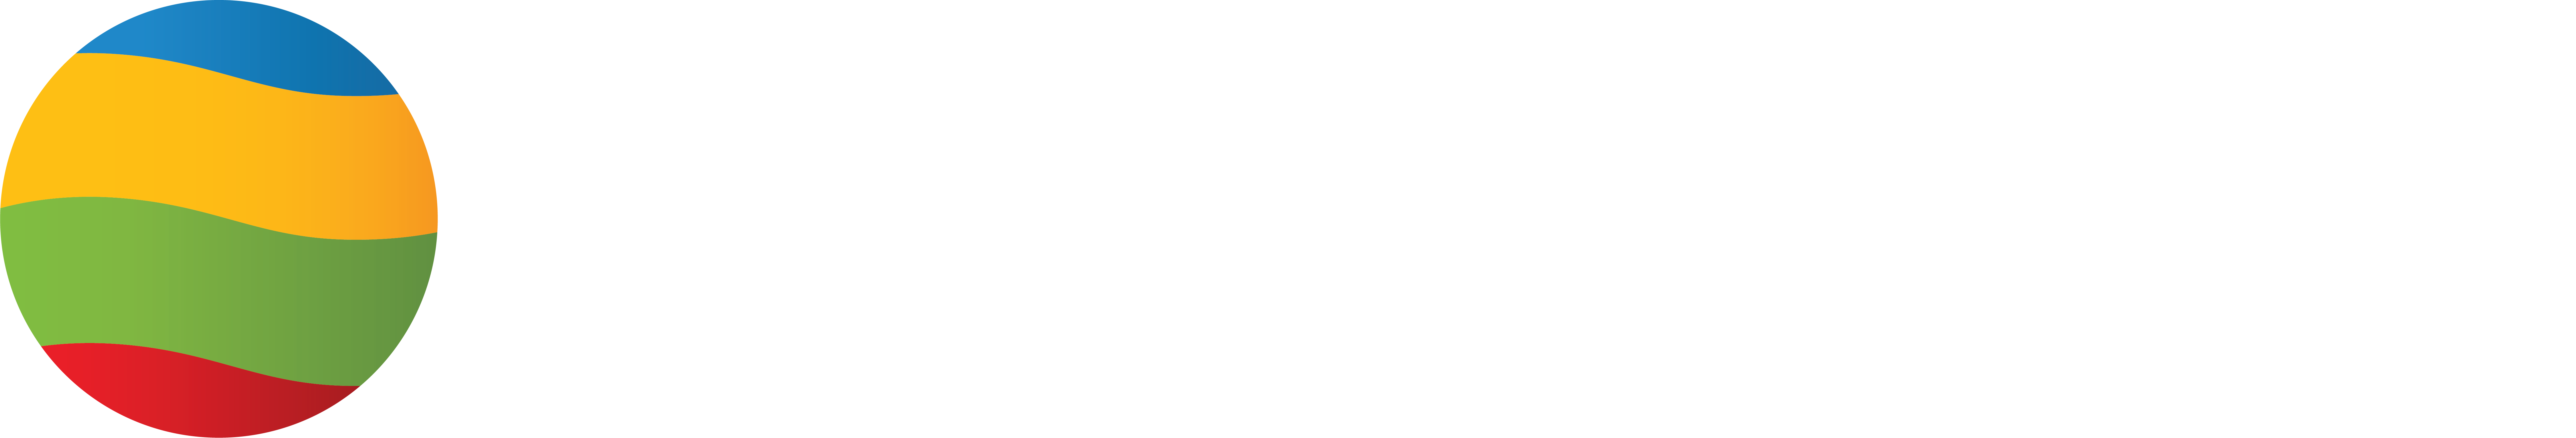 Taopix logo